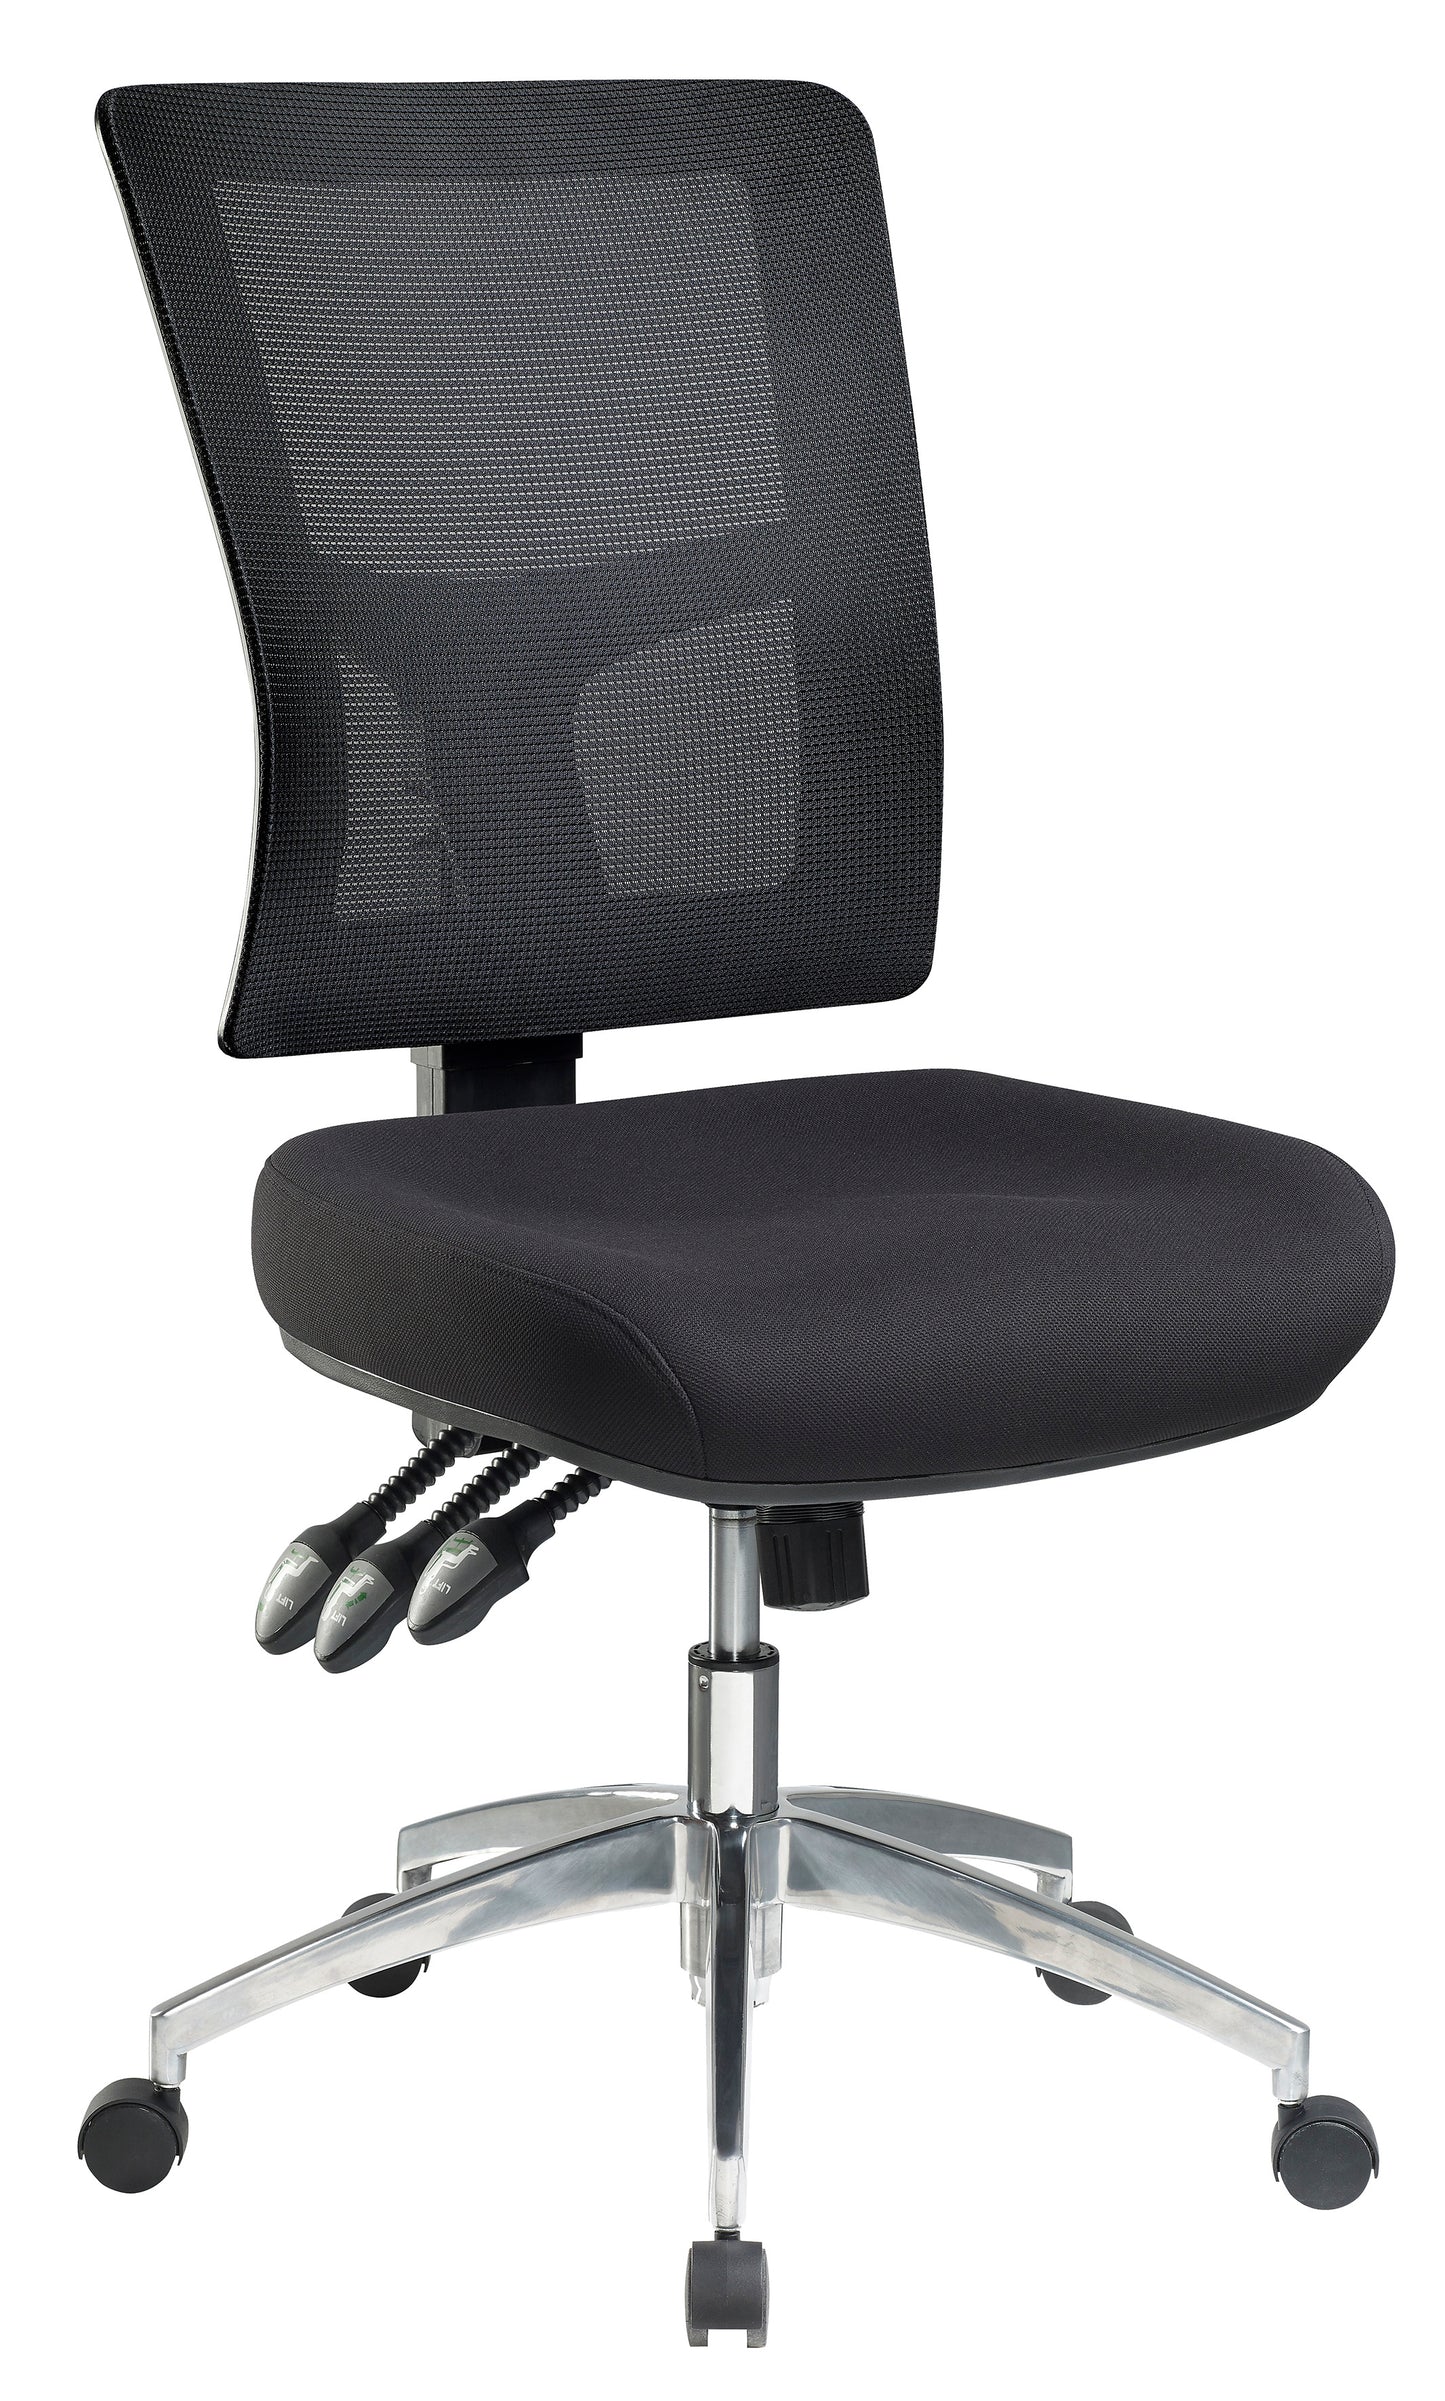 Chair - Enduro